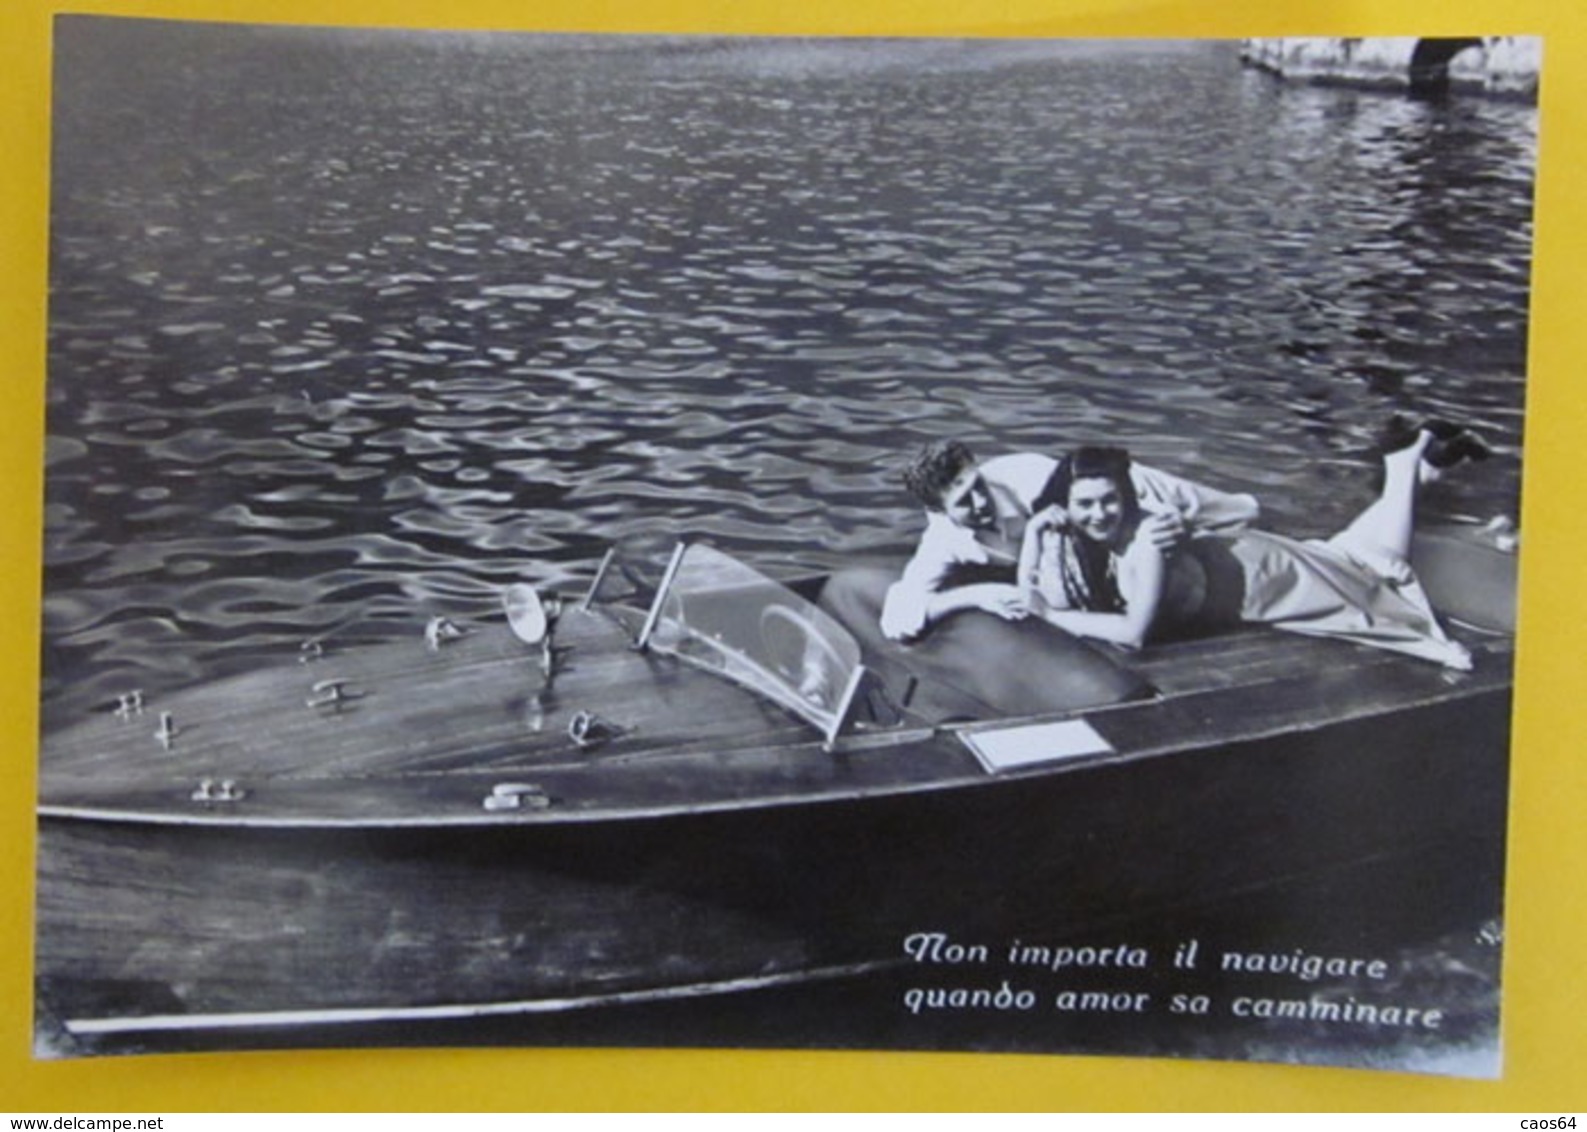 Coppia Innamorati In Barca Frase D'amore Cartolina Bromofoto Vera Fotografia - Coppie